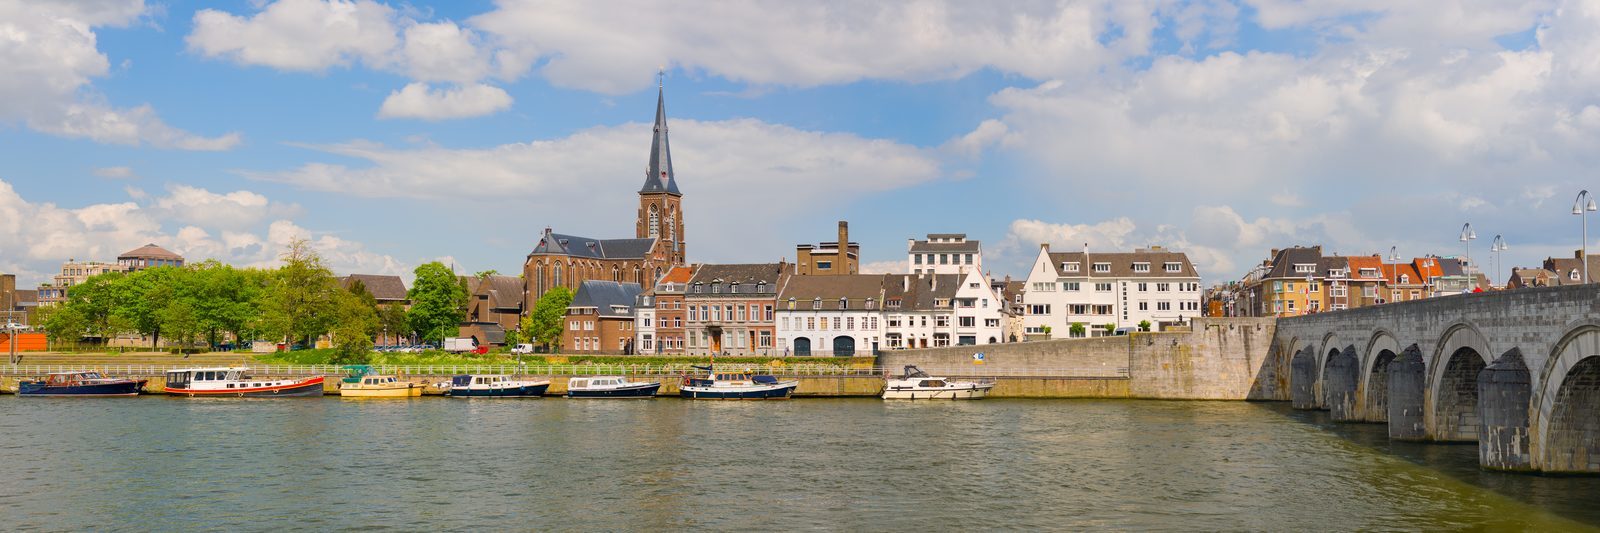 Wochenendausflug Maastricht